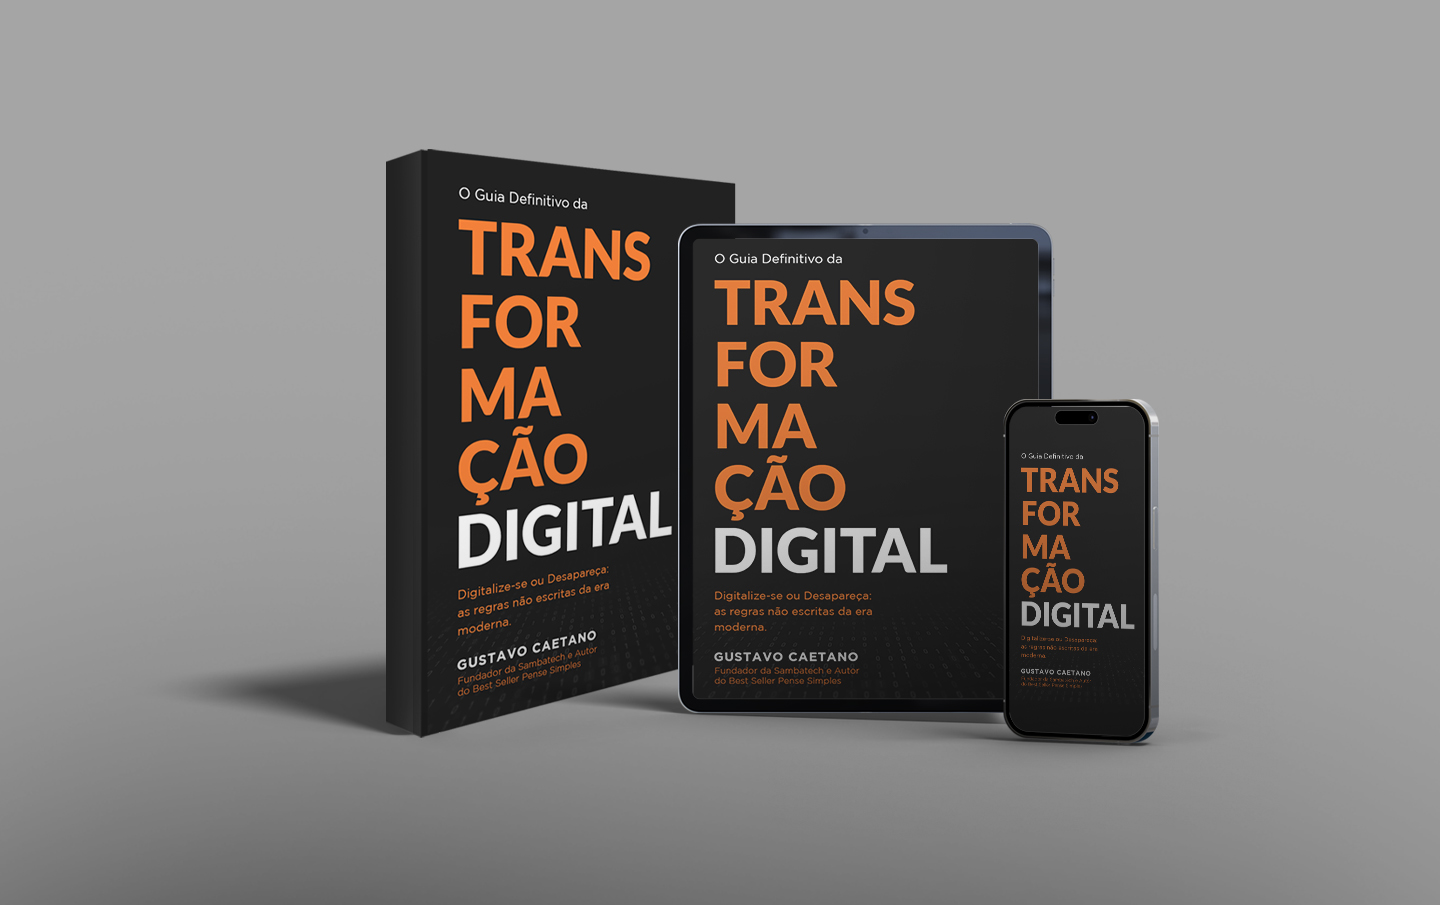 O Guia Definitivo da Transformação Digital: Digitalize-se ou desapareça